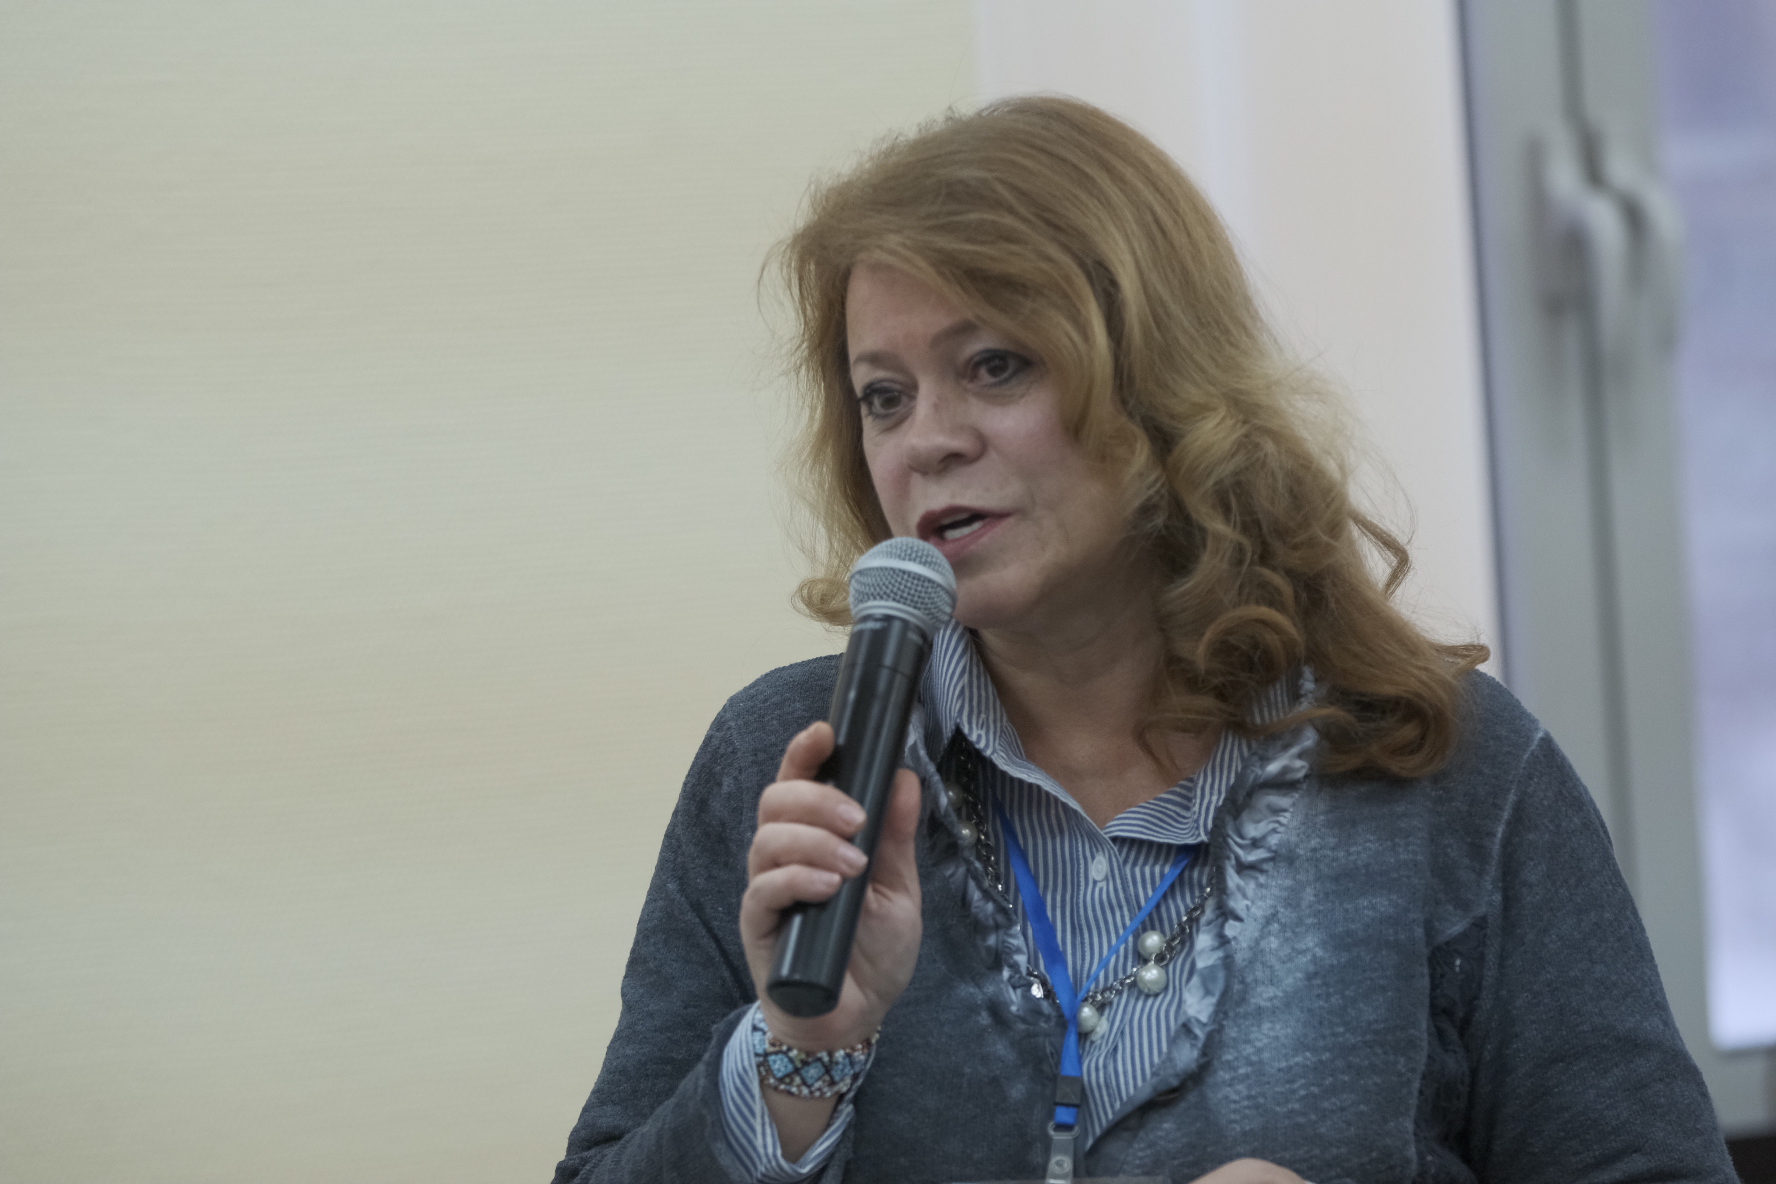 Руководитель пресс-службы ПОРА Марина Горецкая приняла участие в медиа семинаре на фестивале Arctic Open